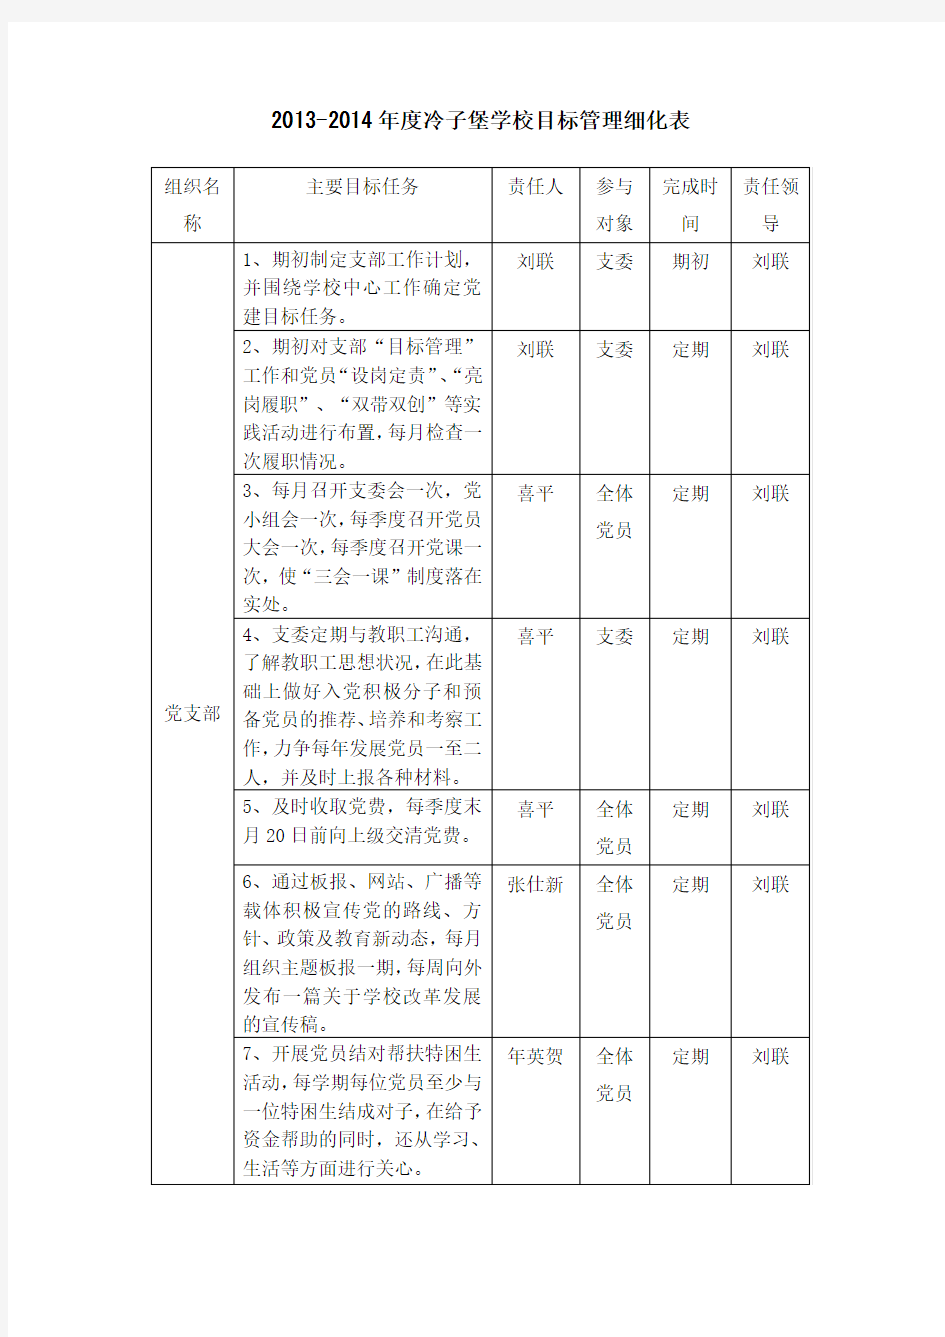 2013目标管理细化表